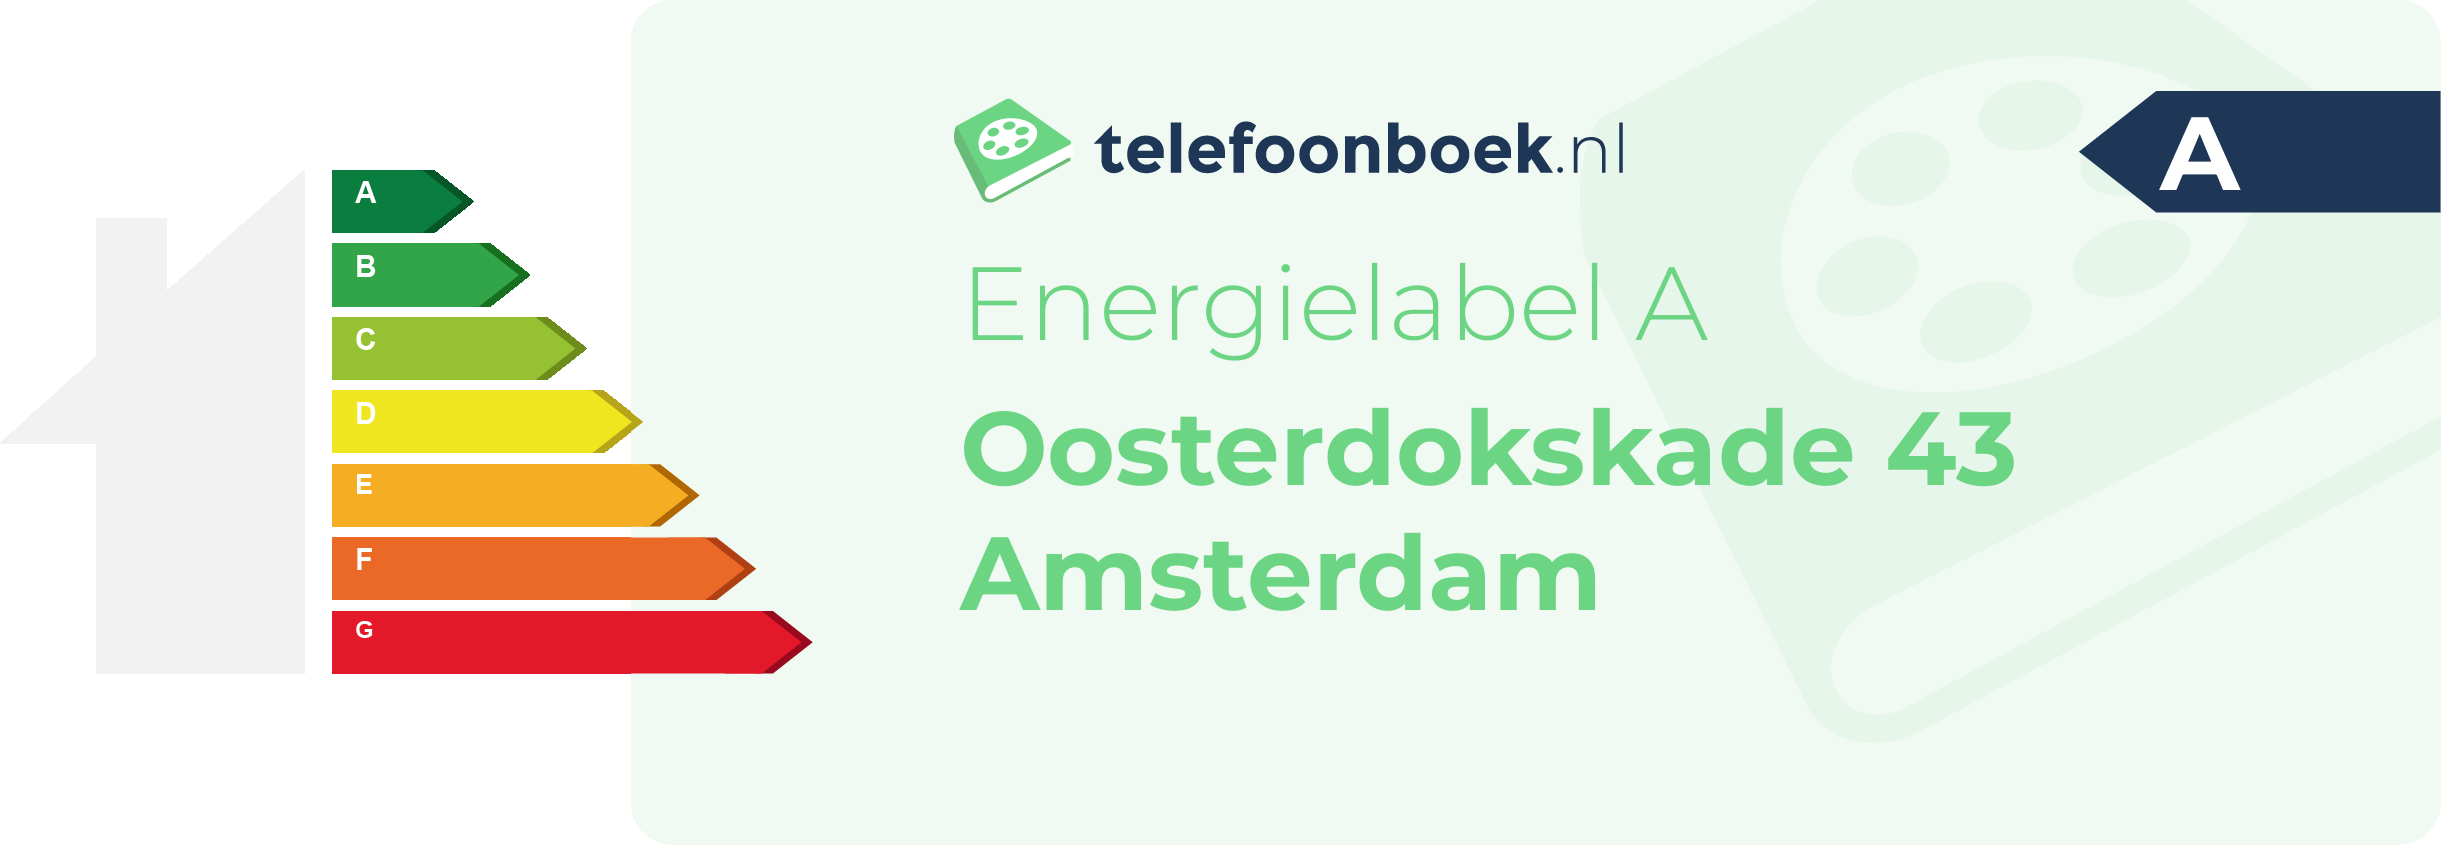 Energielabel Oosterdokskade 43 Amsterdam